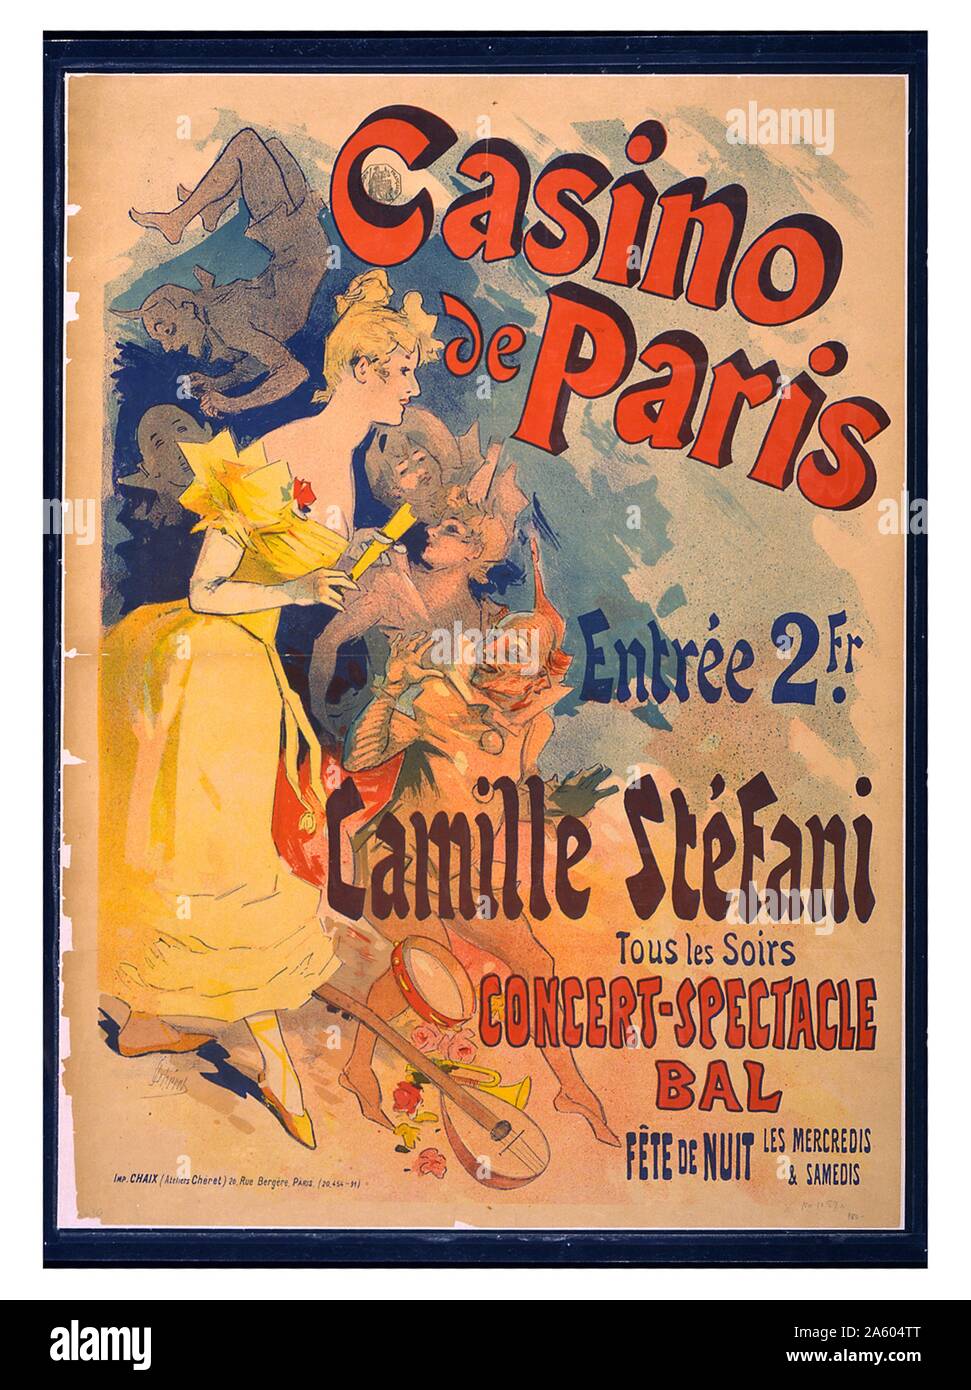 Plakat werbung Casino de Paris mit Camille Stéfani. Konzert - Schauspiel, sym. Übersicht Camille Stéfani mit Akrobaten und Gaukler. Stockfoto